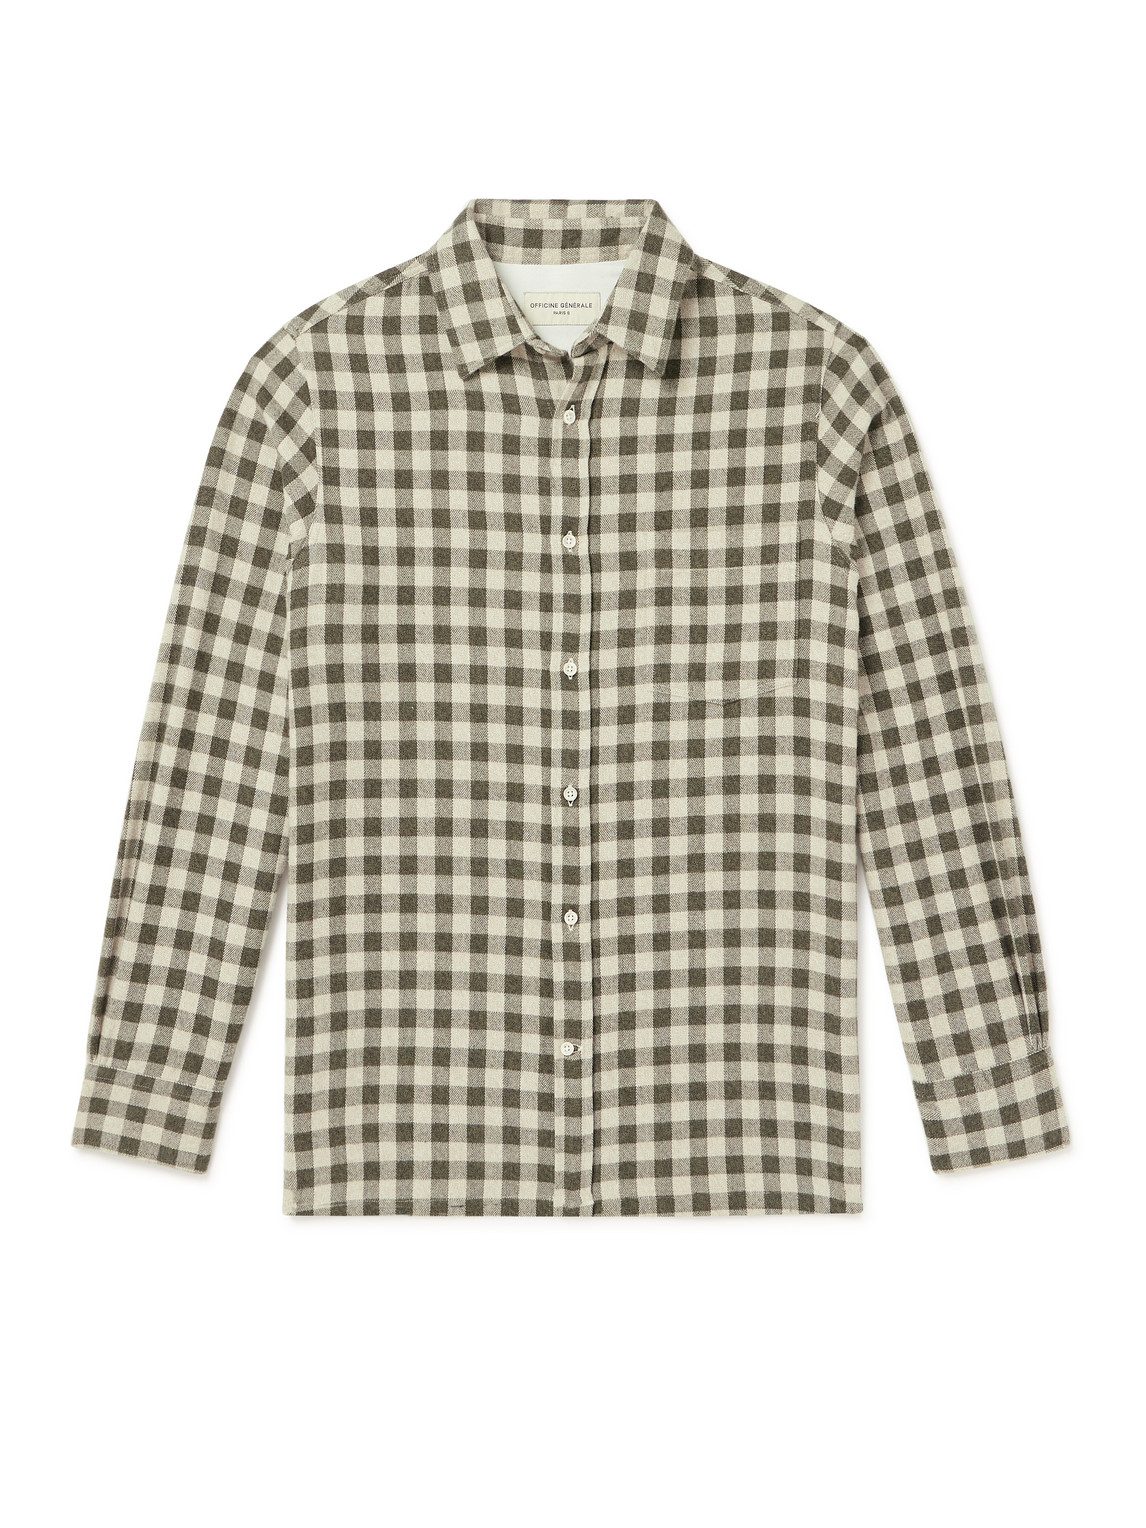 Officine Générale - Alex Checked Herringbone Cotton Shirt - Men - Neutrals - L von Officine Générale